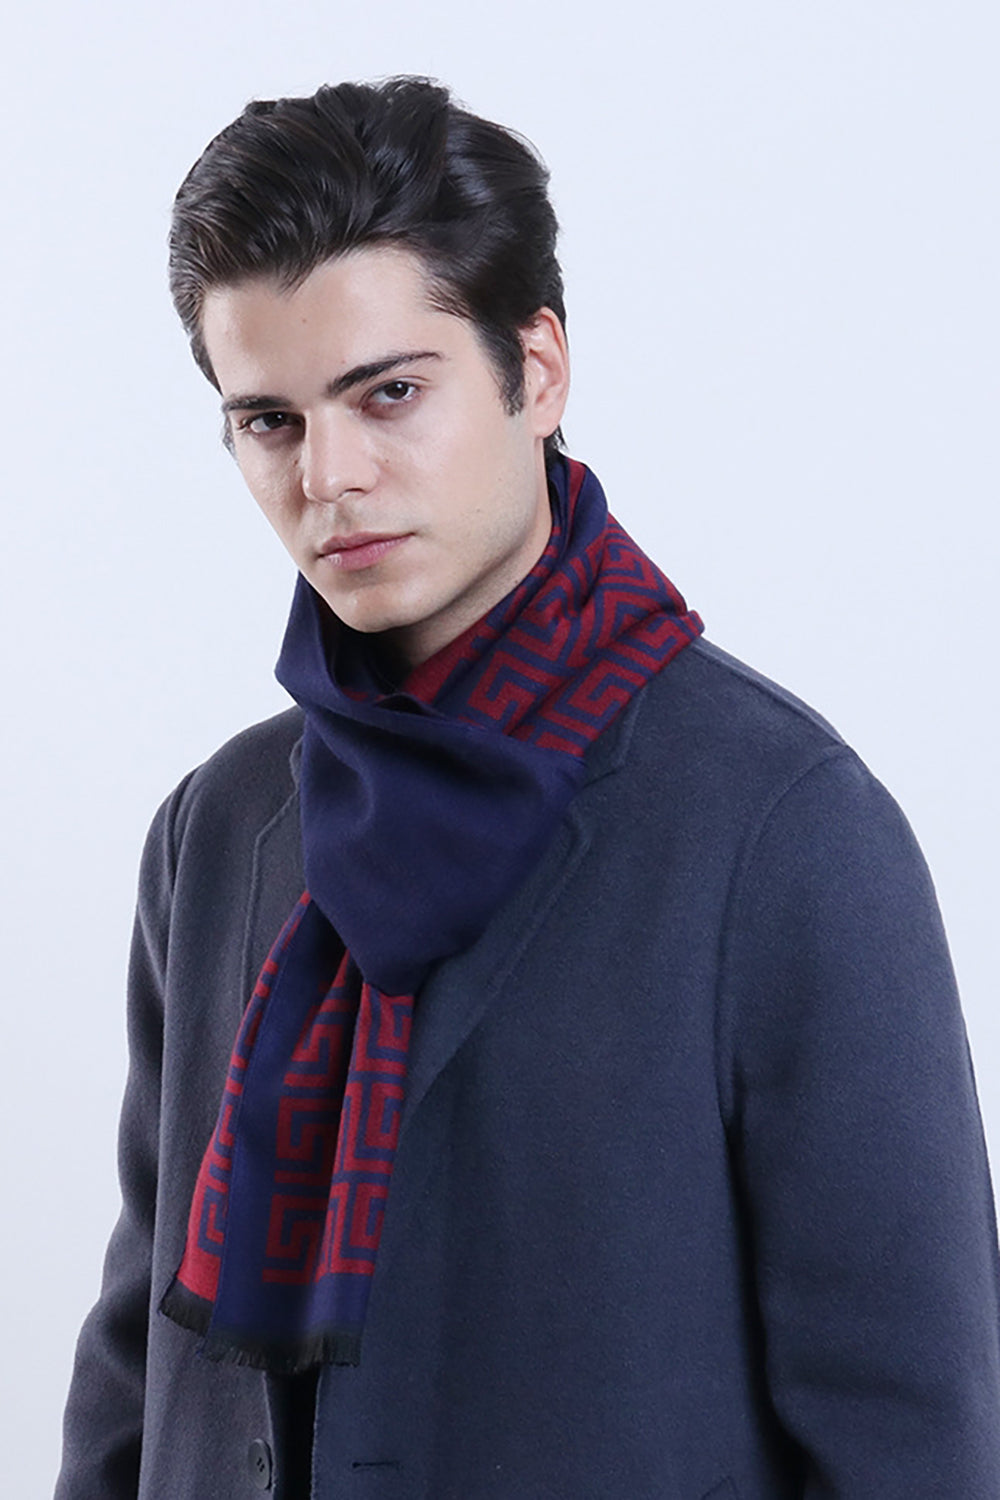 Bordeaux geometria stampata calda sciarpa morbida per gli uomini